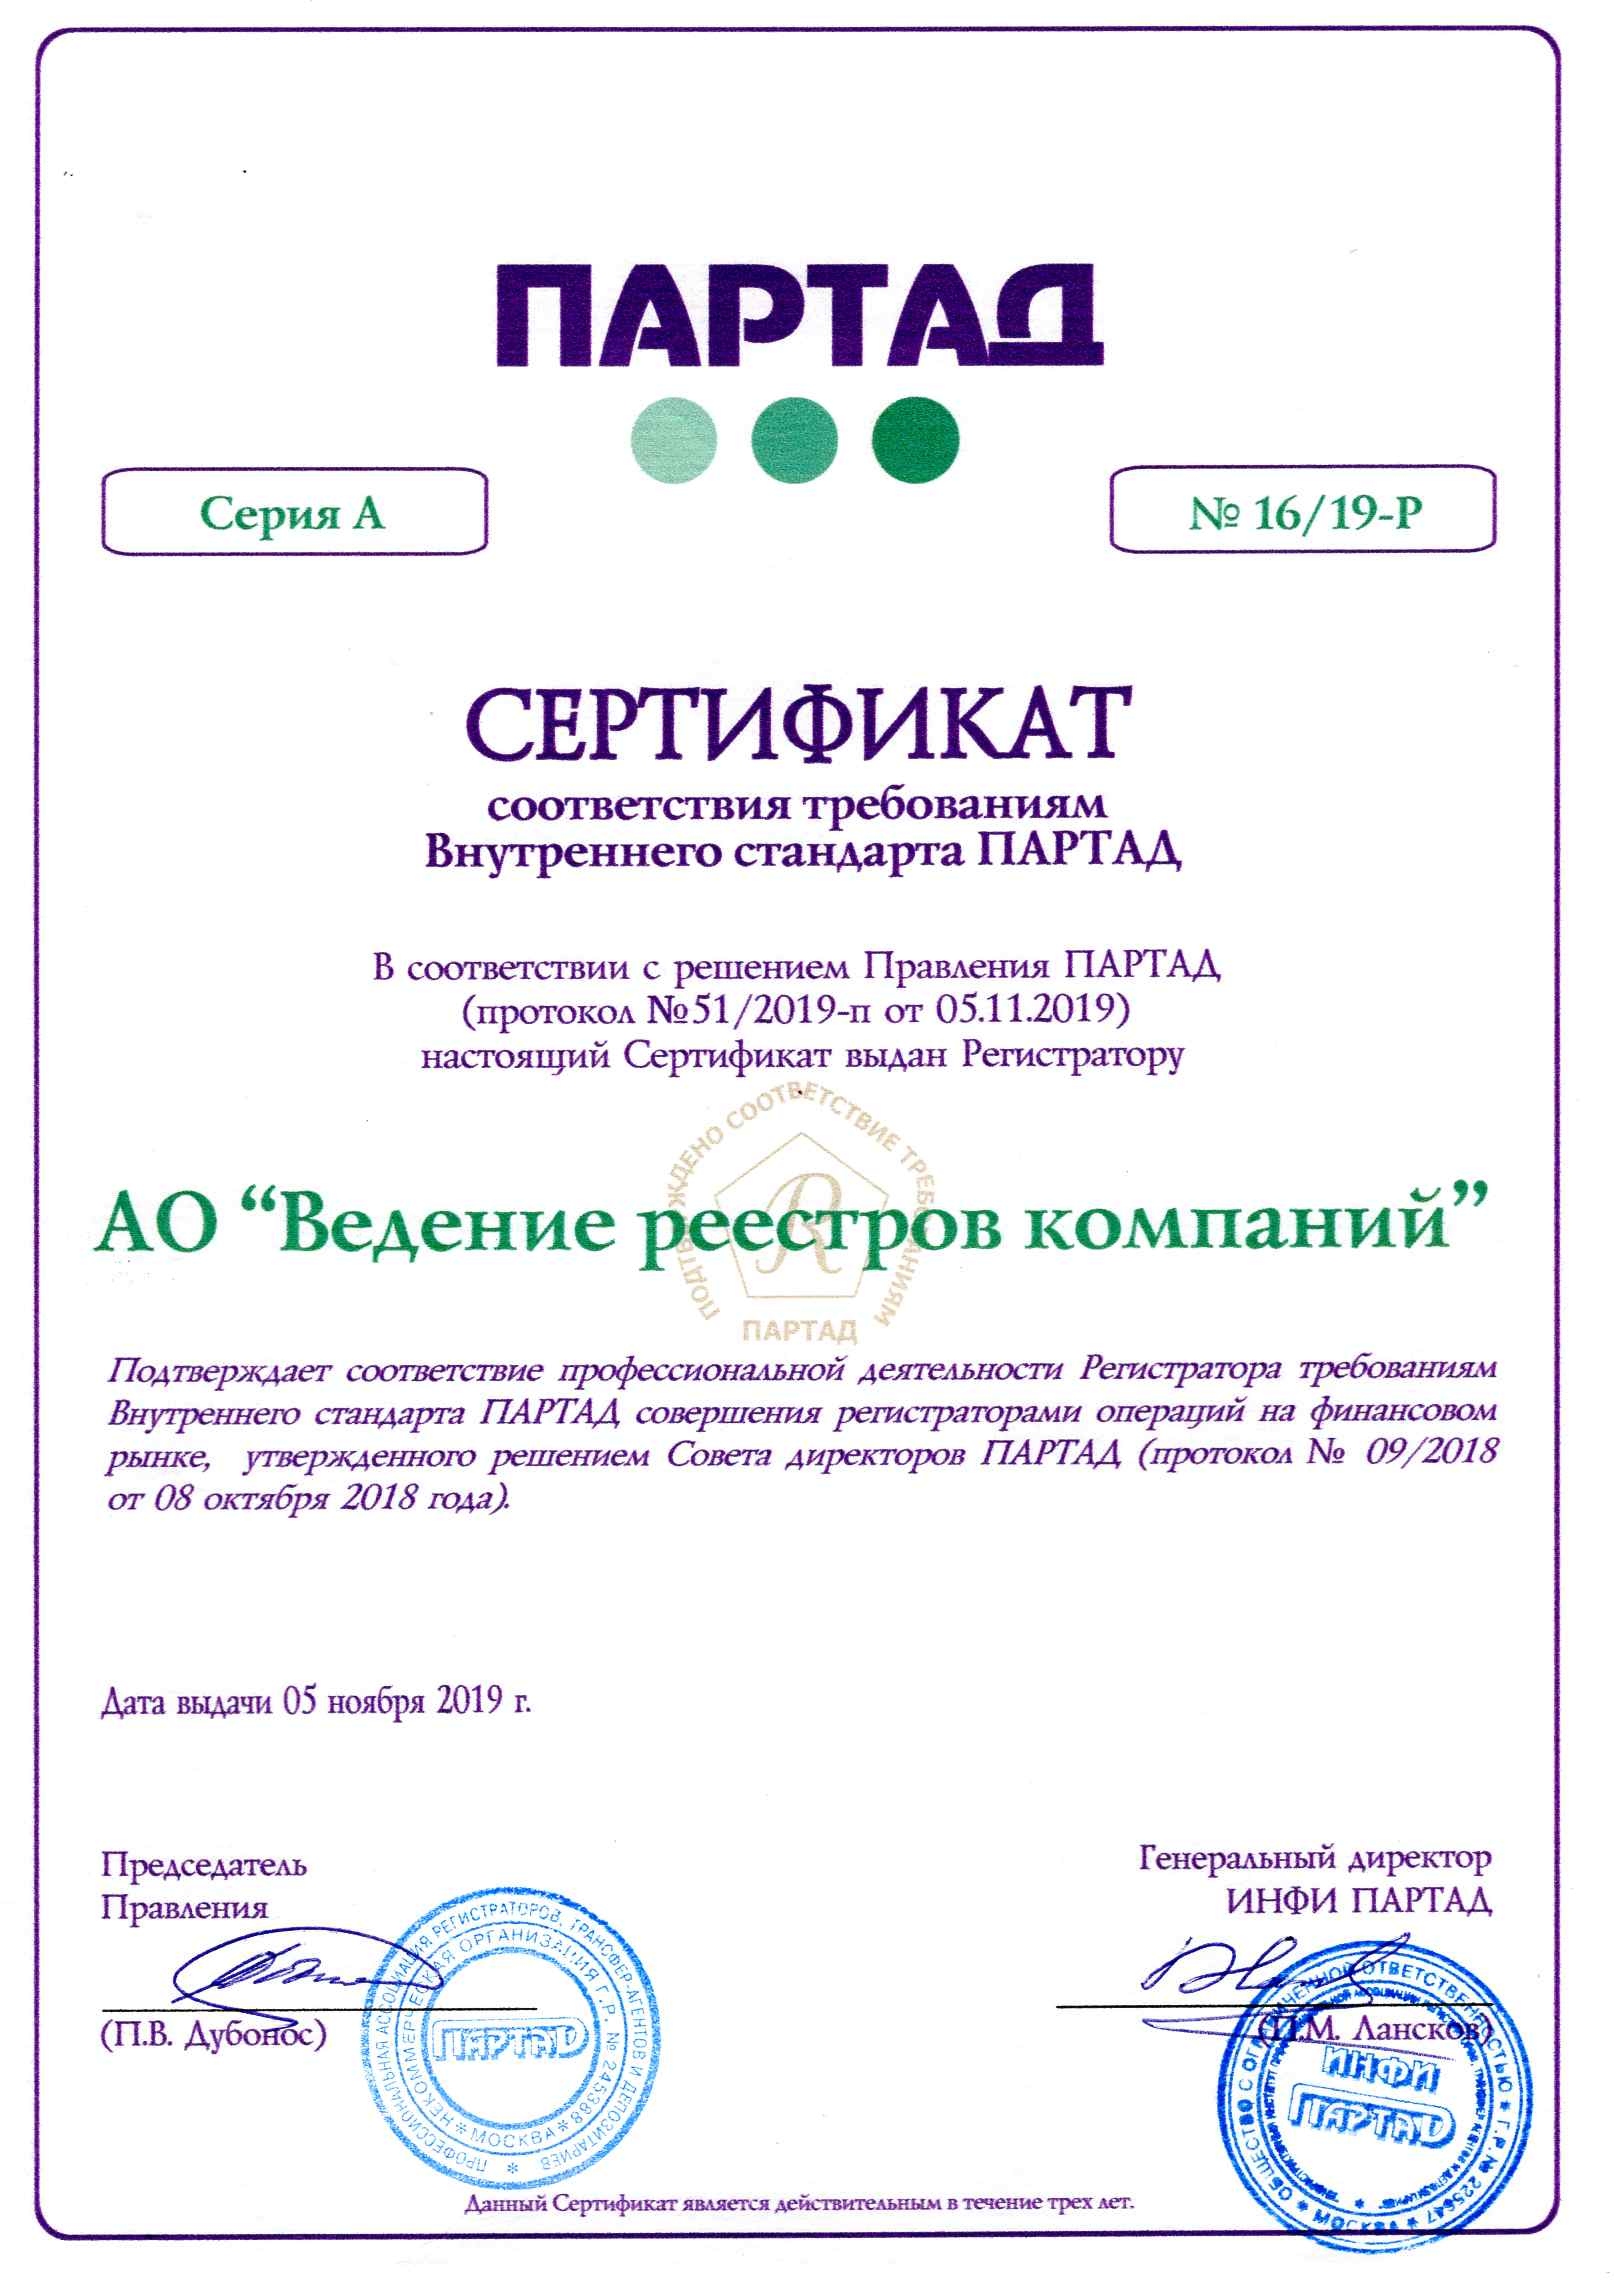 Сертификат ПАРТАД соответствия требованиям Стандартов регистраторской деятельности